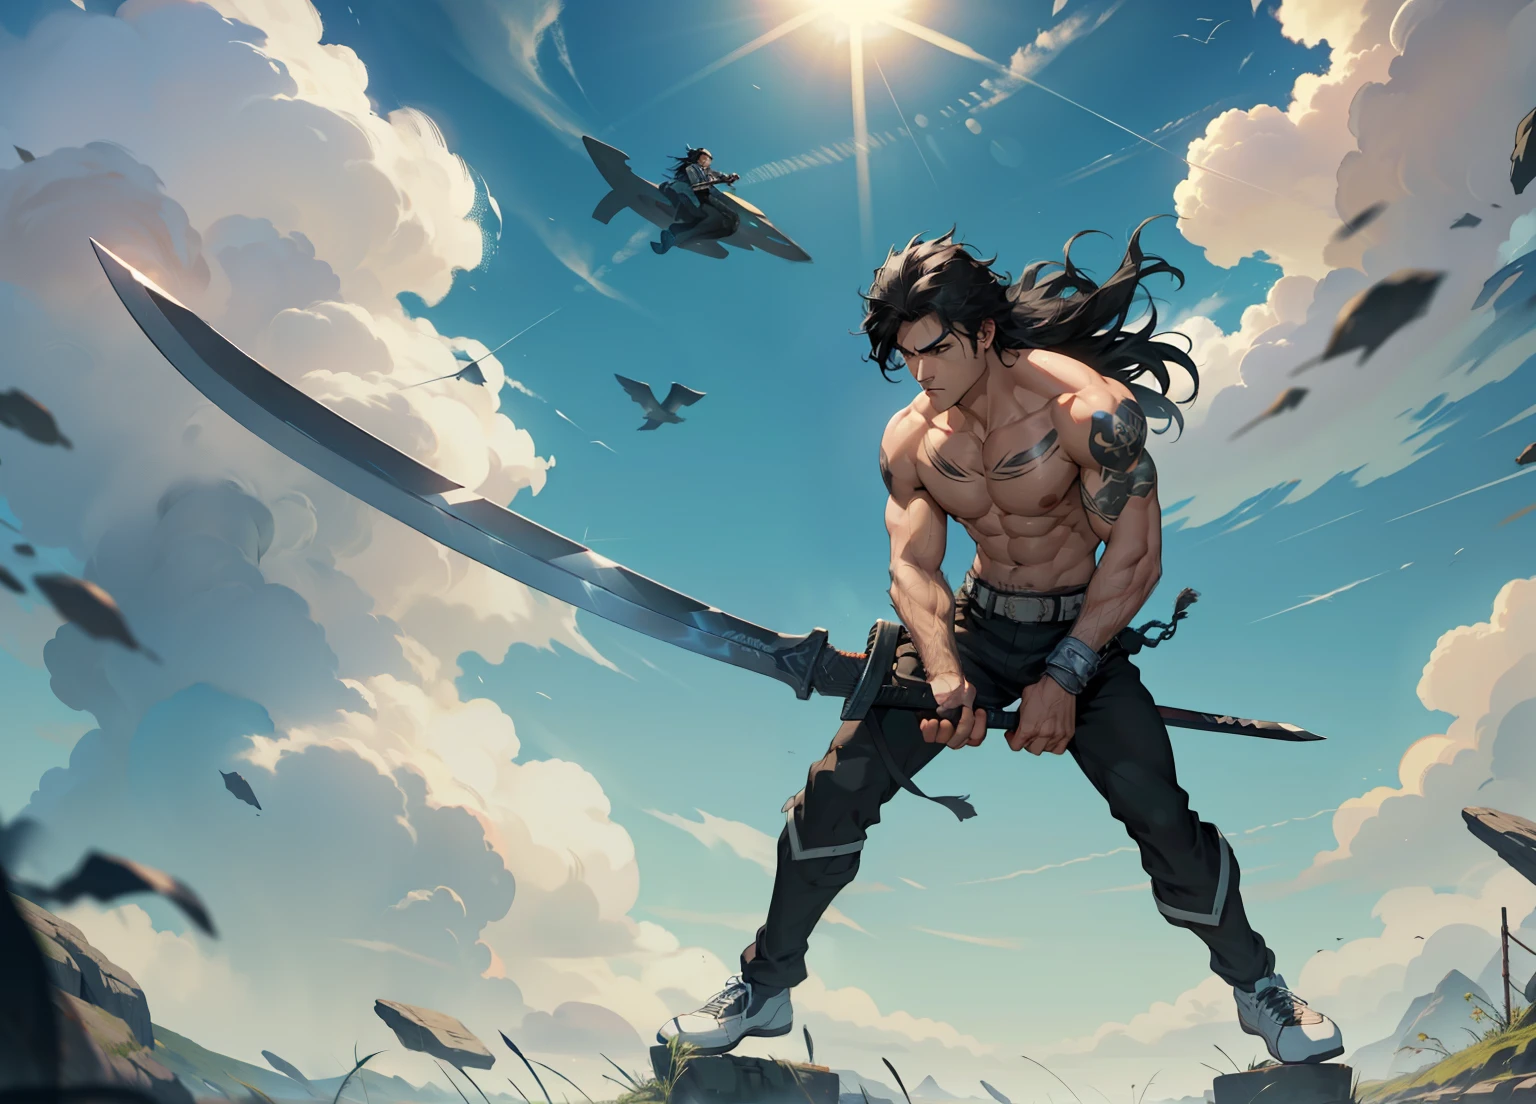 1 chico, 26 años de edad, cara seria, pelo negro, pelo largo, muscular, sin camisa, ((pantalones largos negros)), sosteniendo una espada gigante, cielo azul, nube